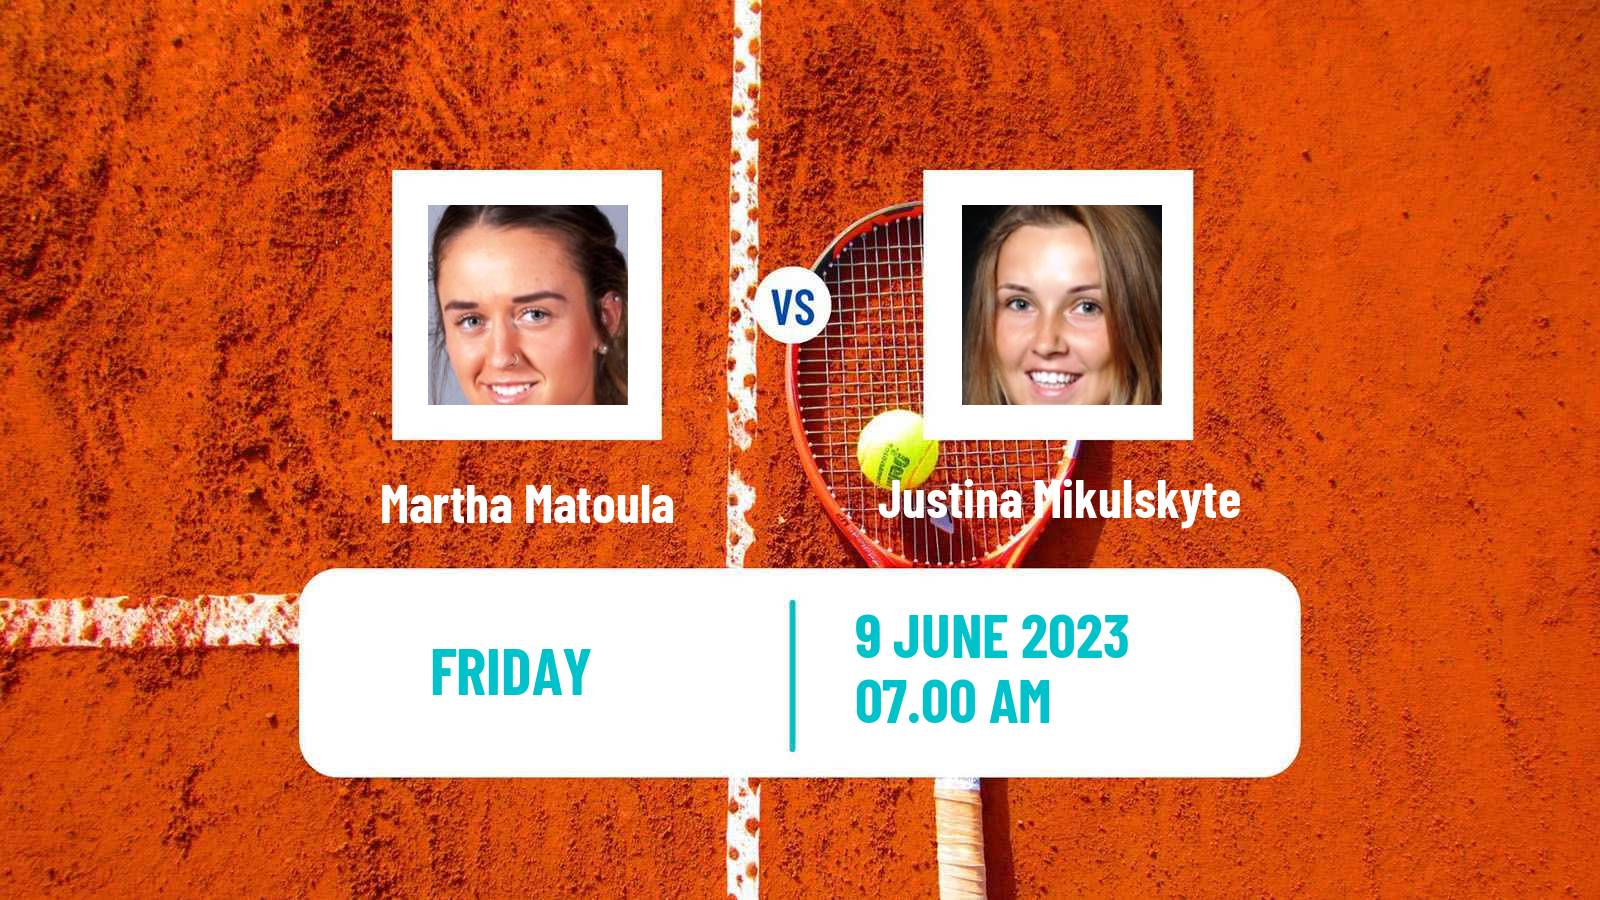 Tennis ITF W40 La Marsa Women Martha Matoula - Justina Mikulskyte